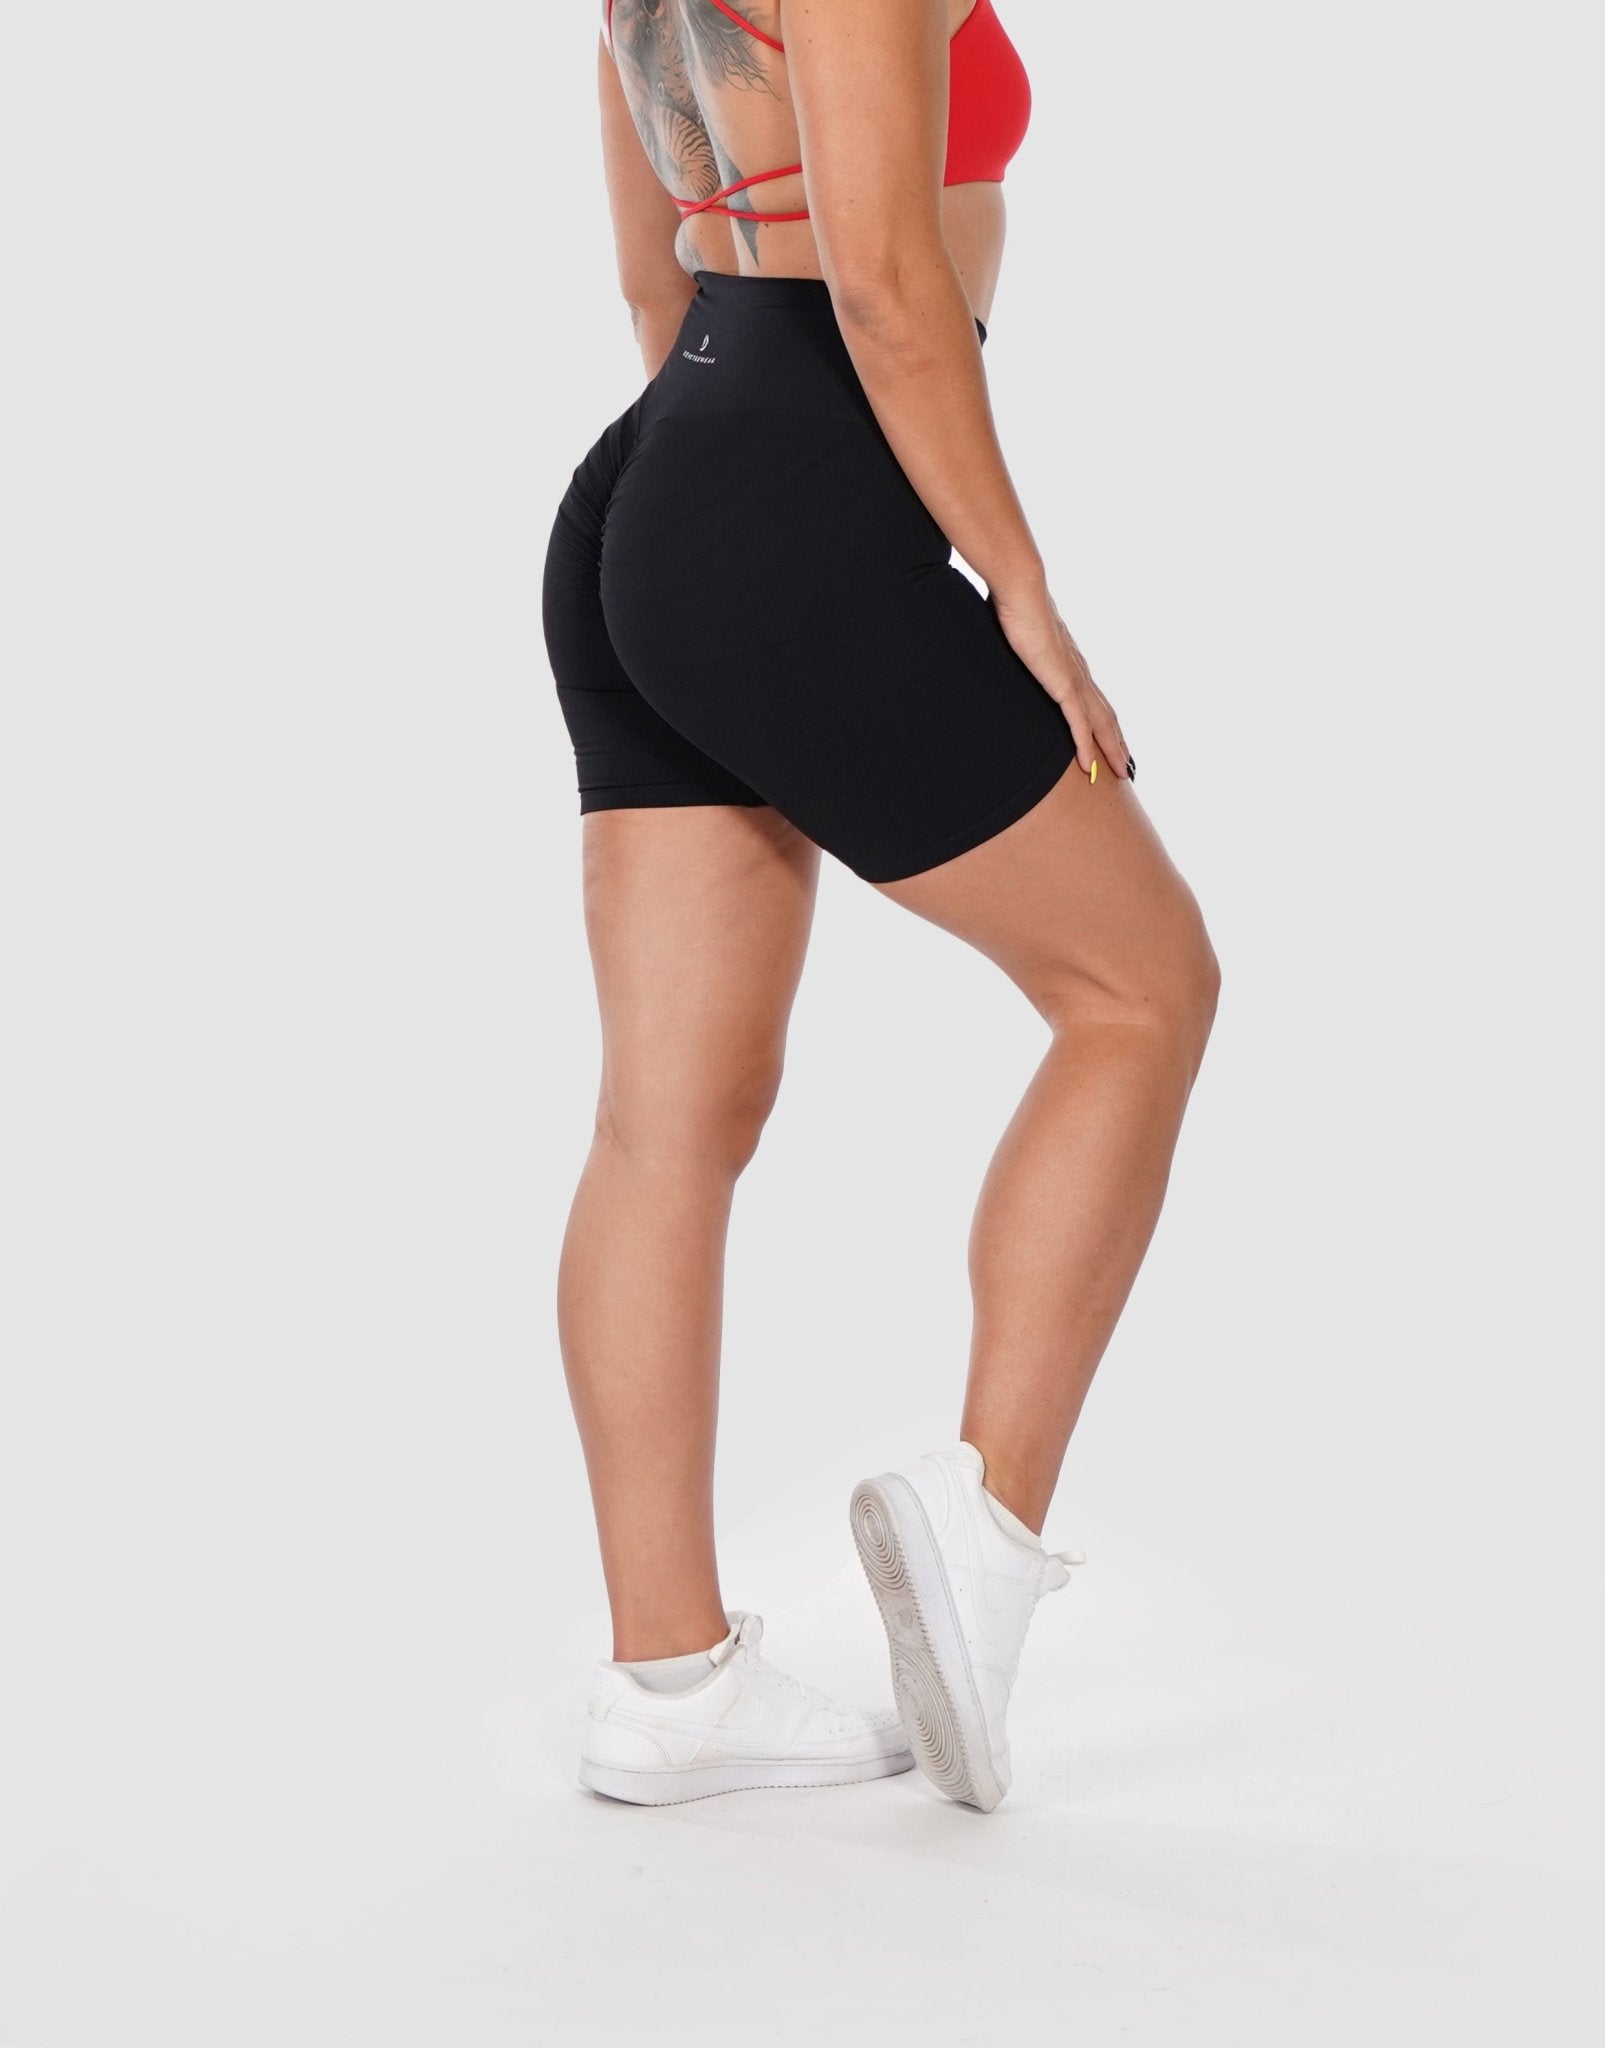 High Waist Brazilian Bum Scrunch Booty Workout Short Shorts - ShopperBoard